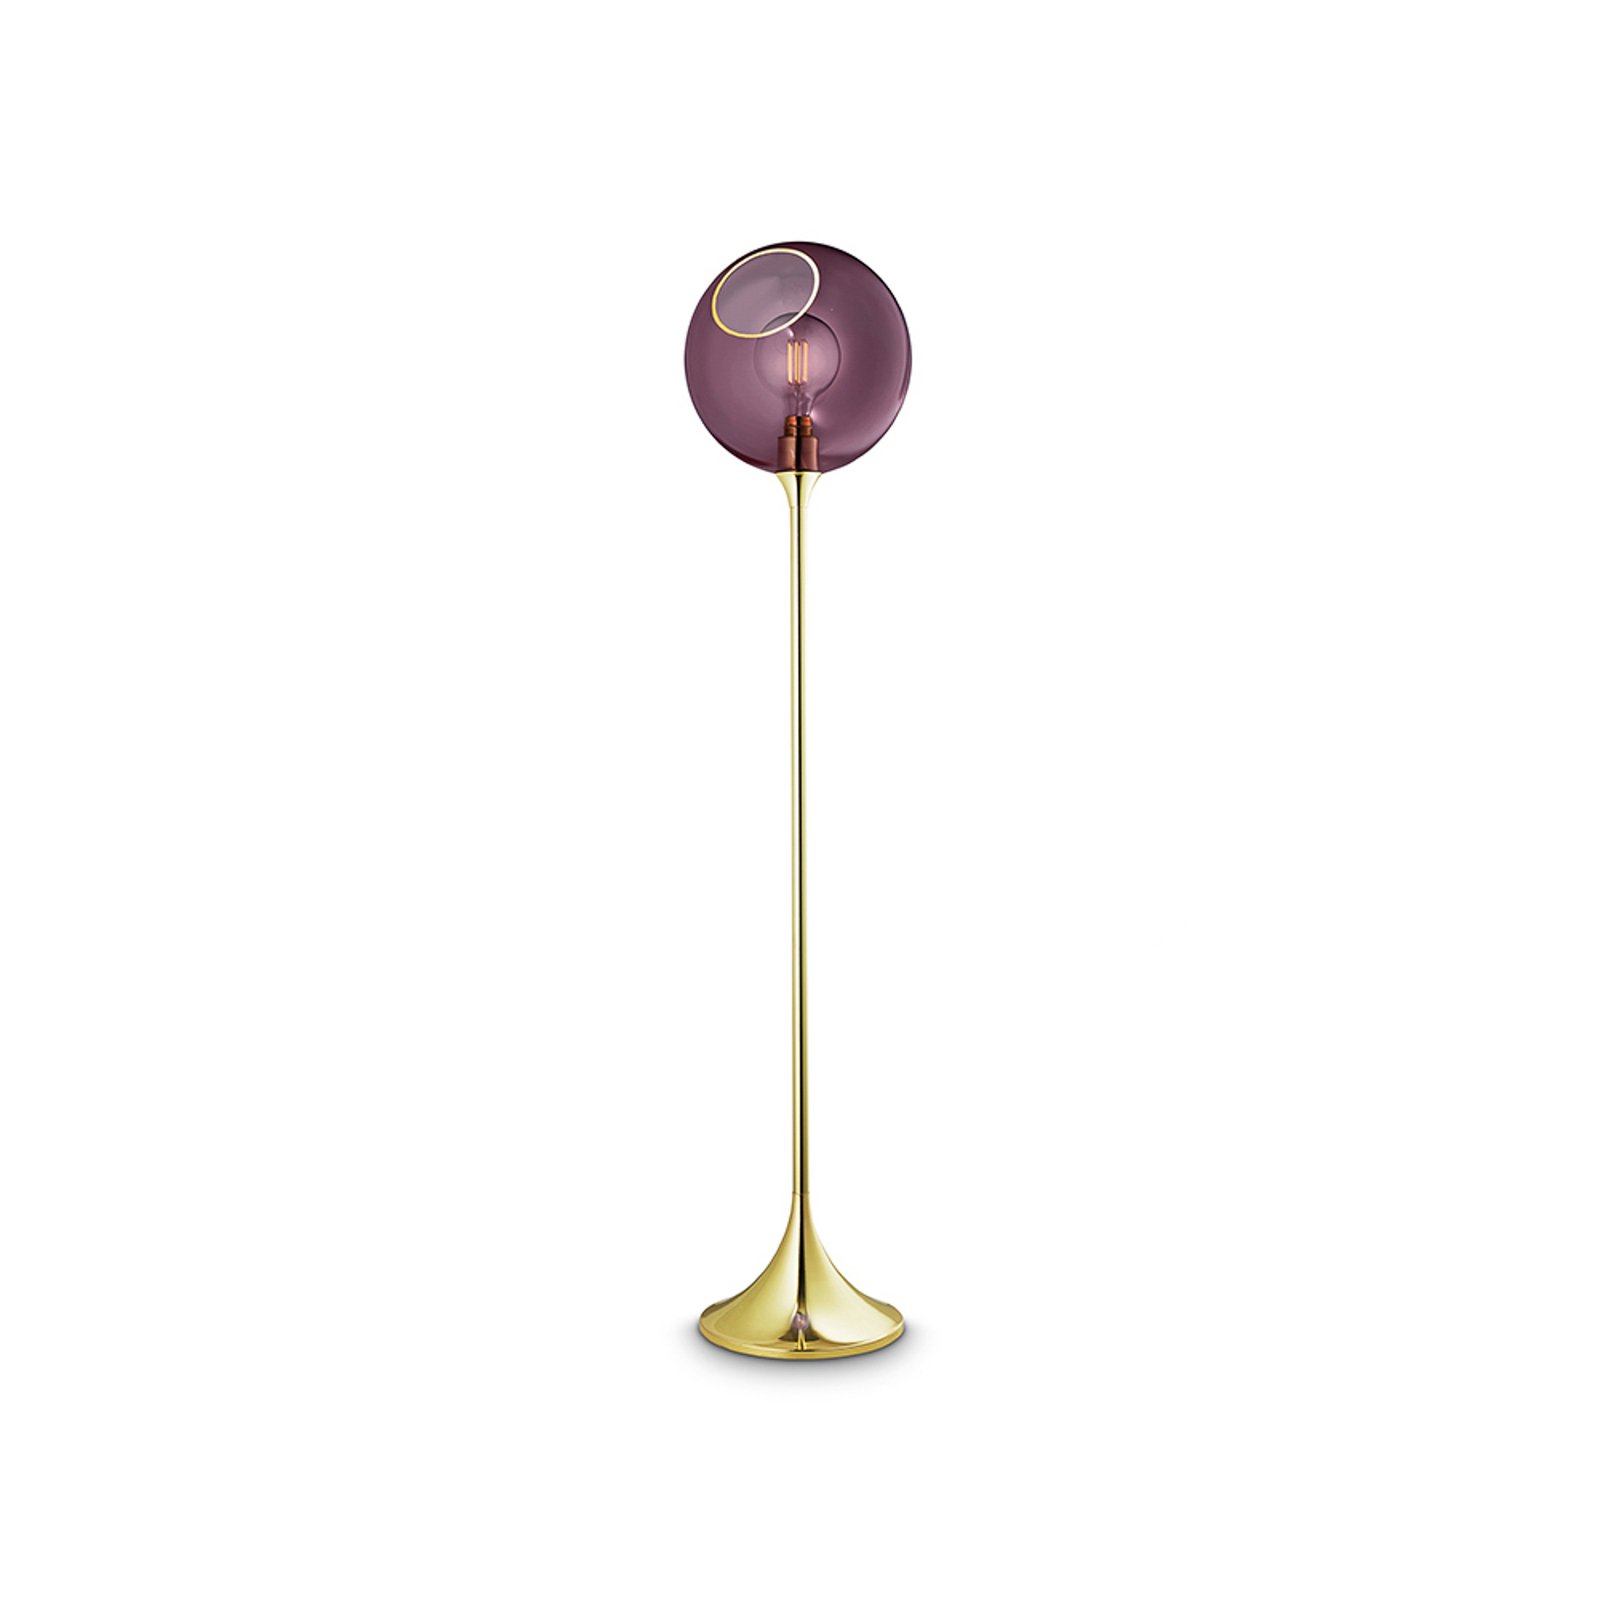 Lampa stojąca Ballroom, fioletowa, szklana, ręcznie dmuchana, ściemniana